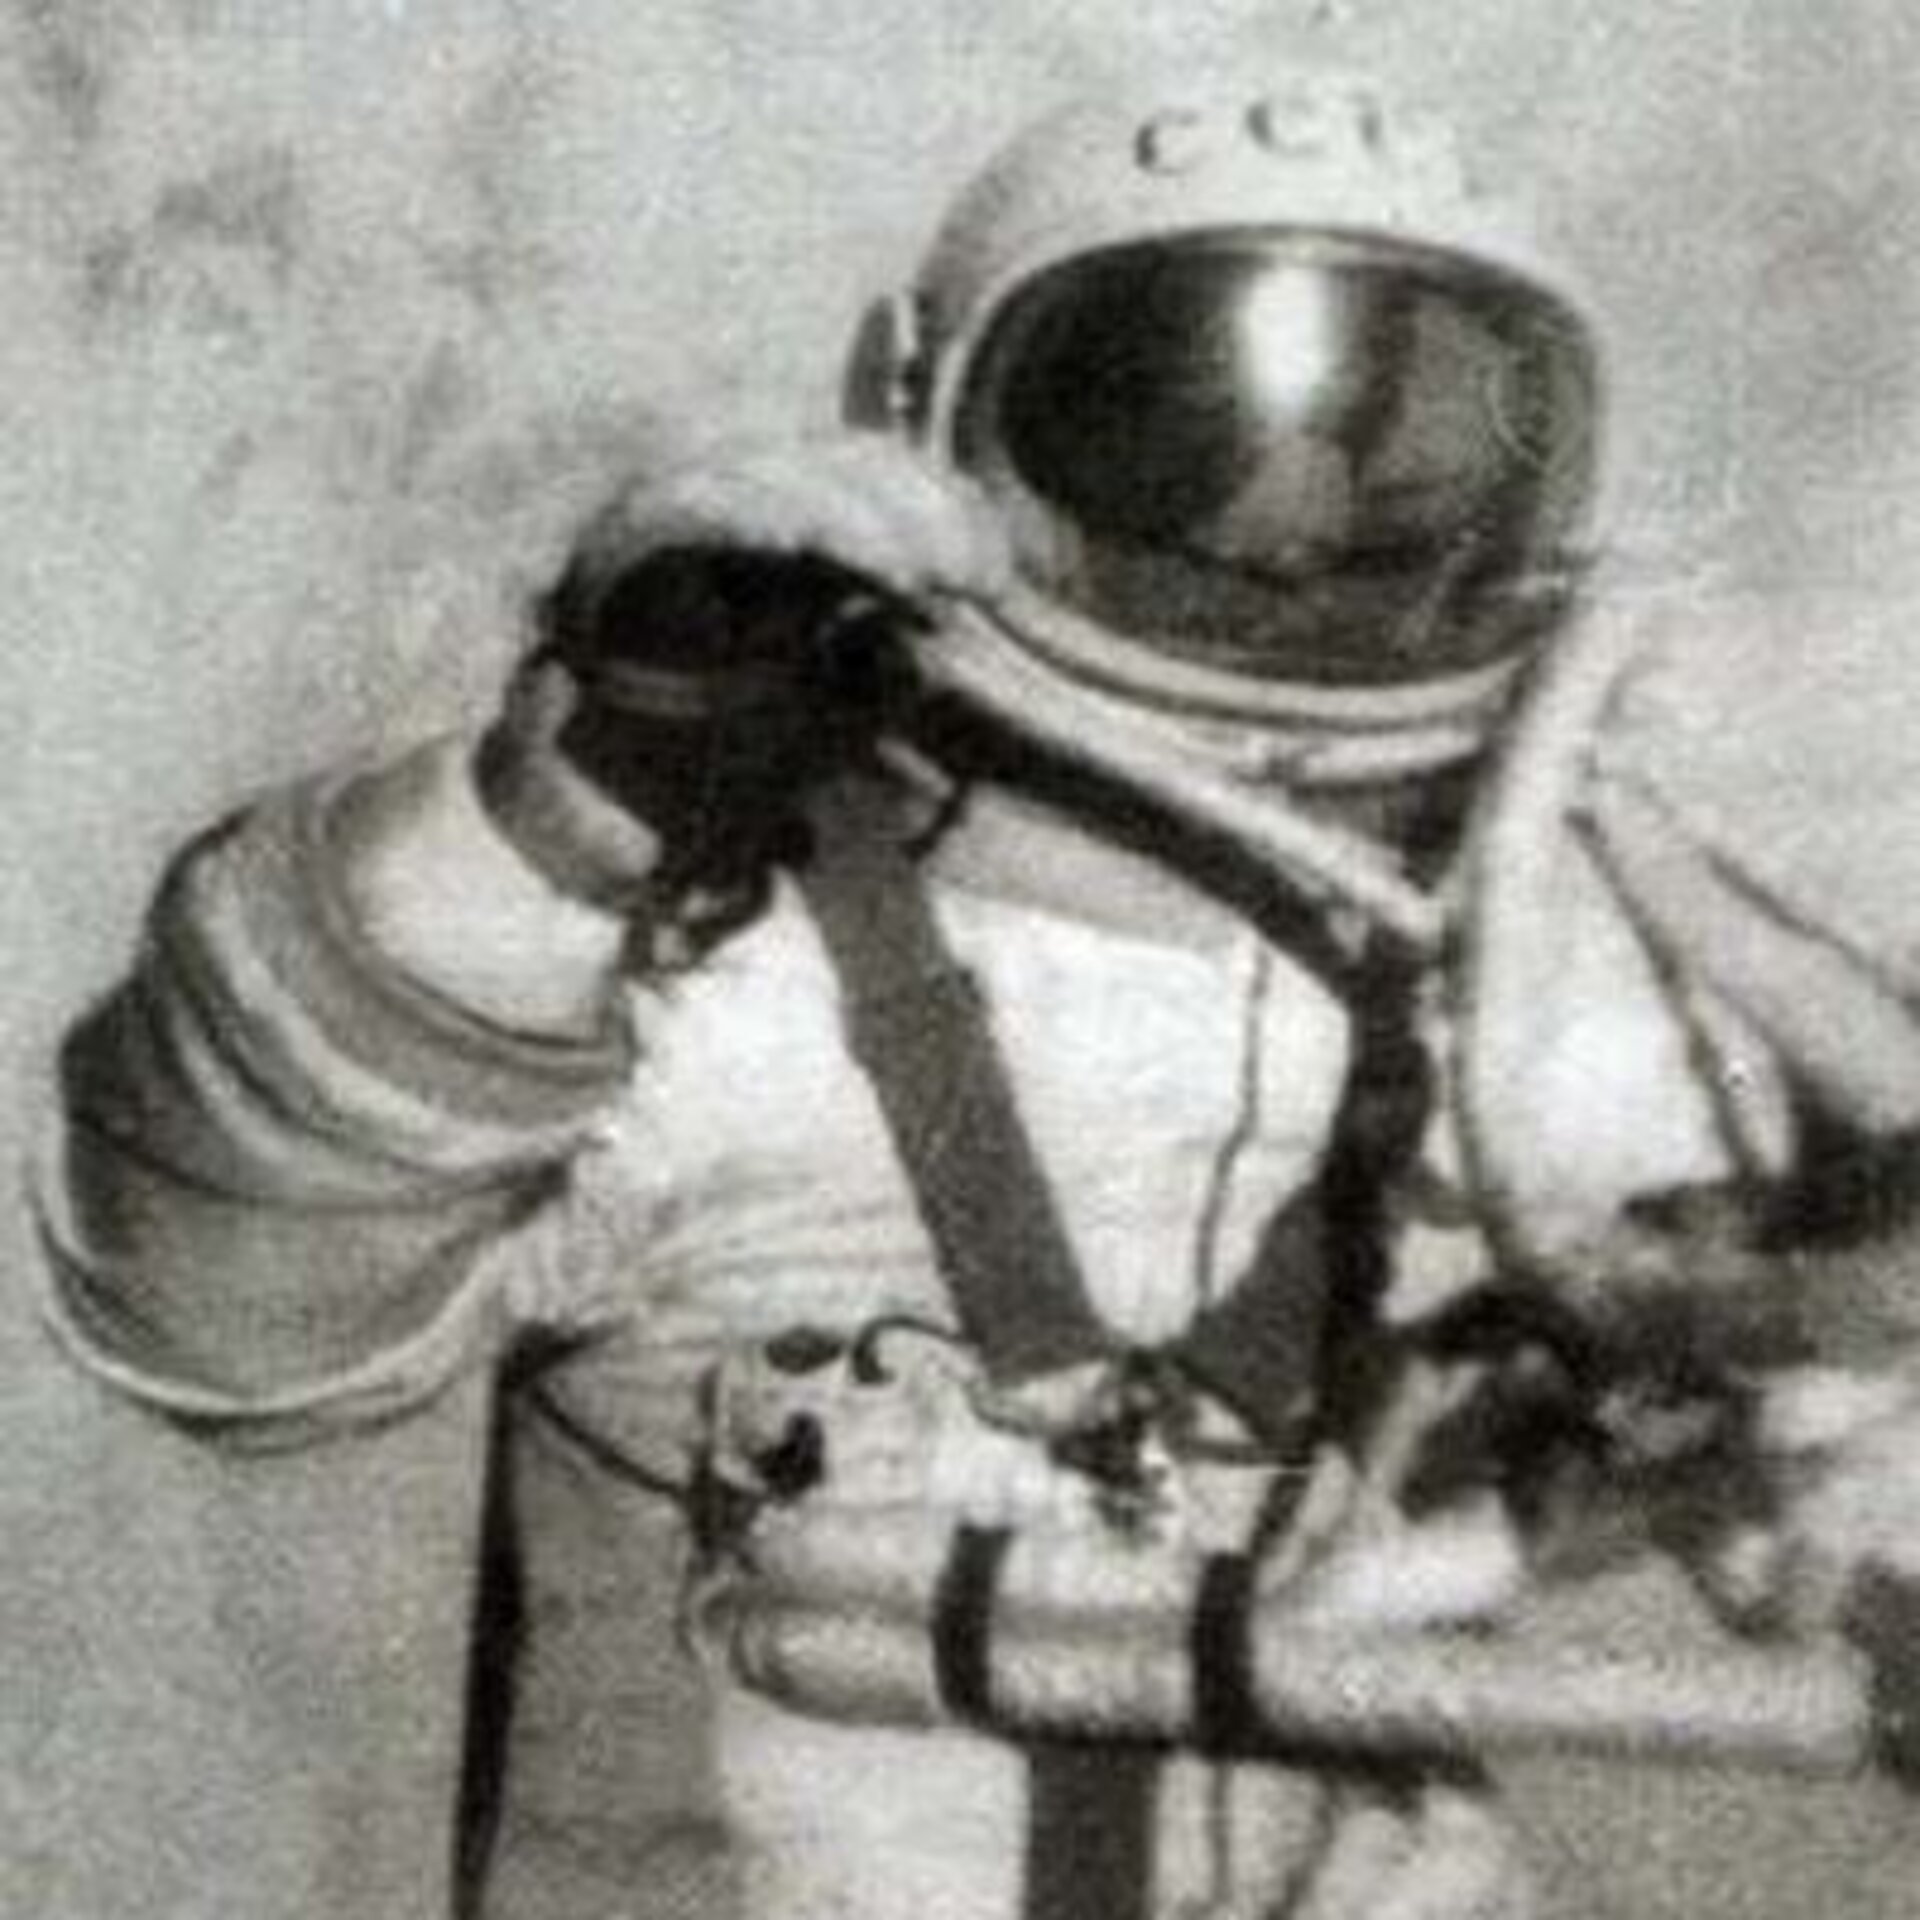 Voskhod 2 spacewalk